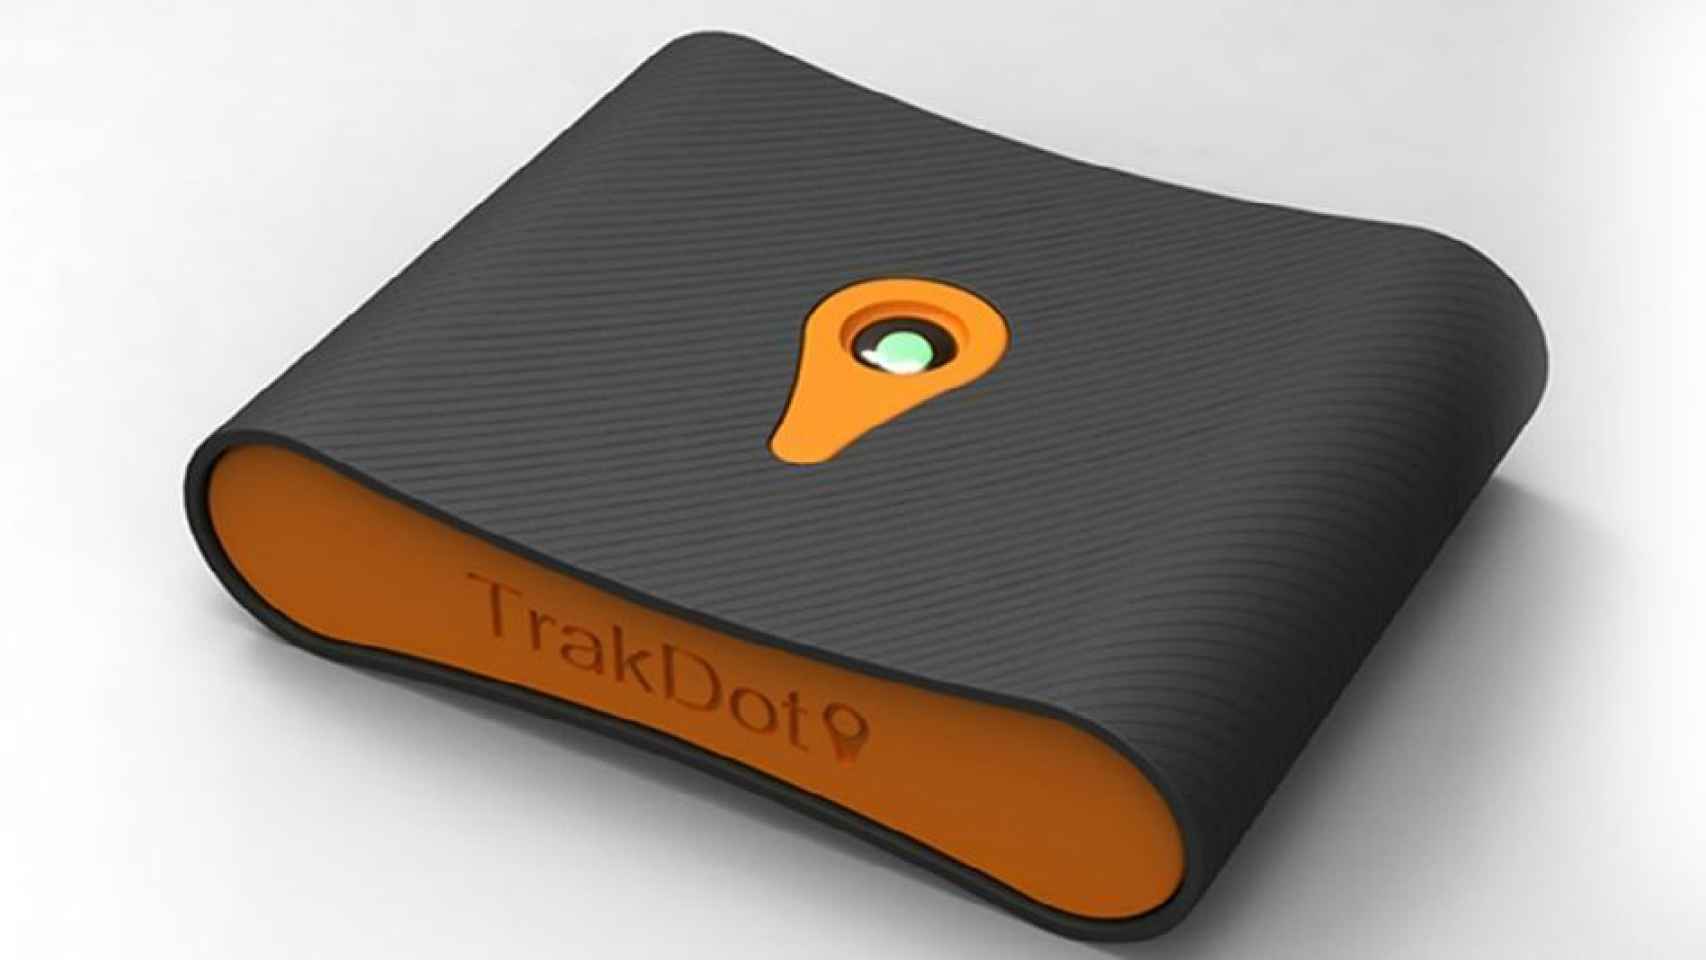 Seguimiento de tu equipaje en tiempo real con Trackdot